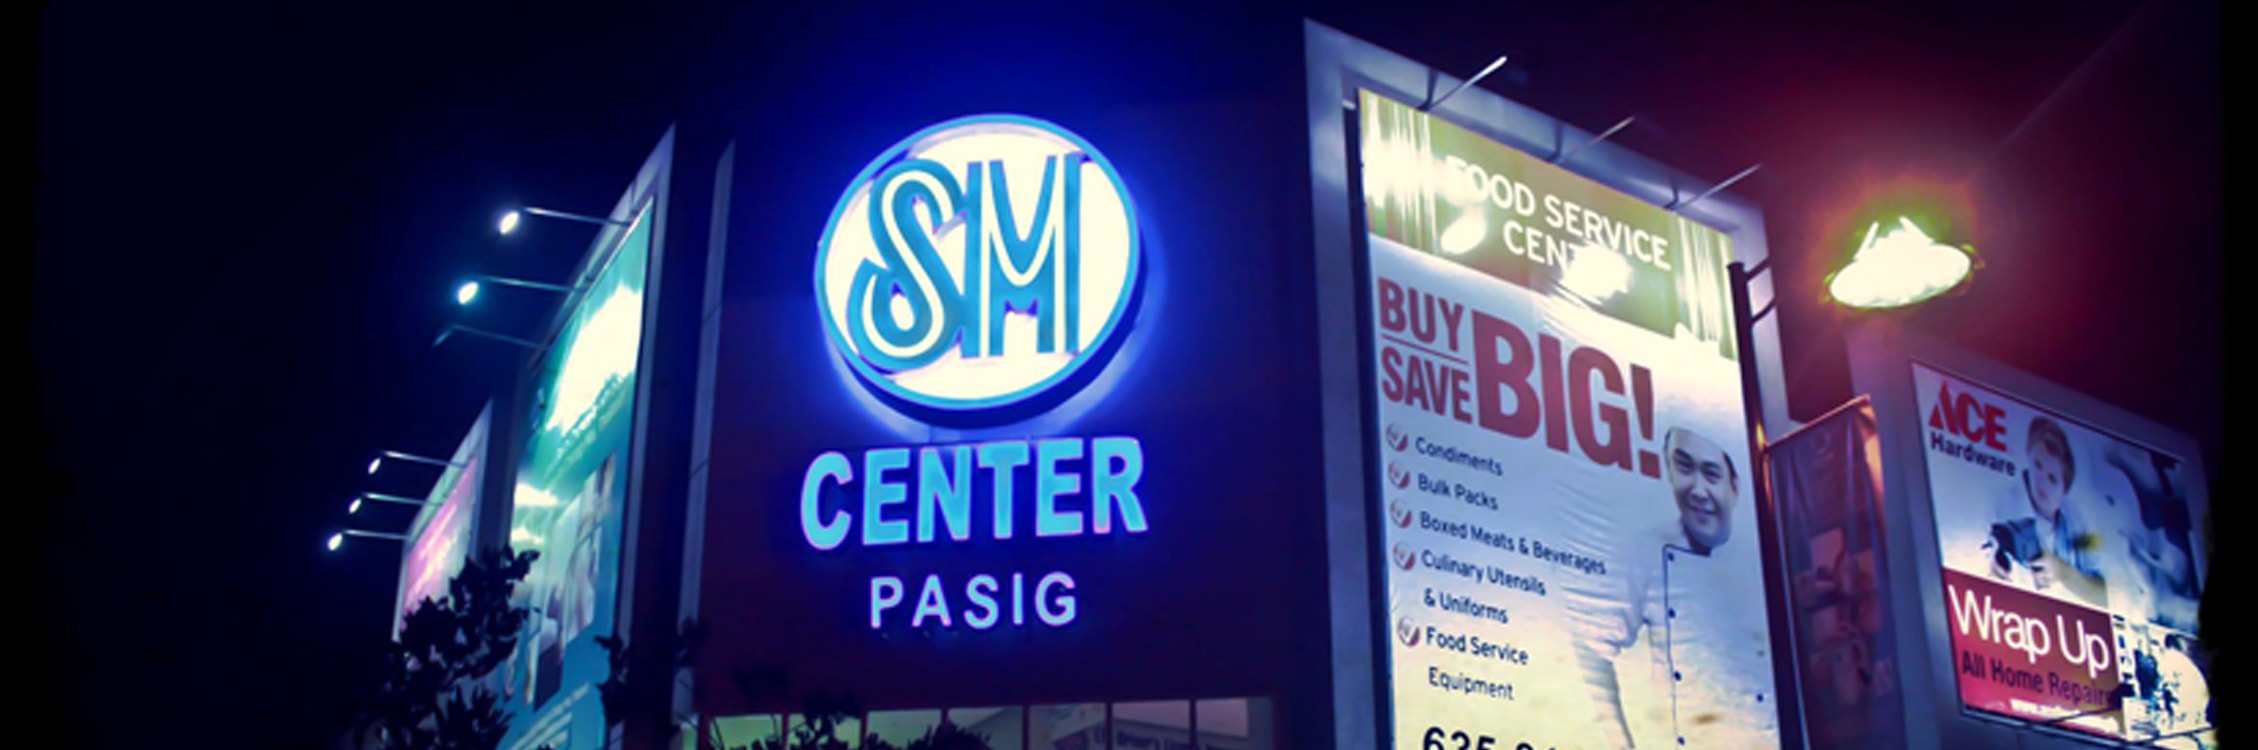 SM Center Pasig